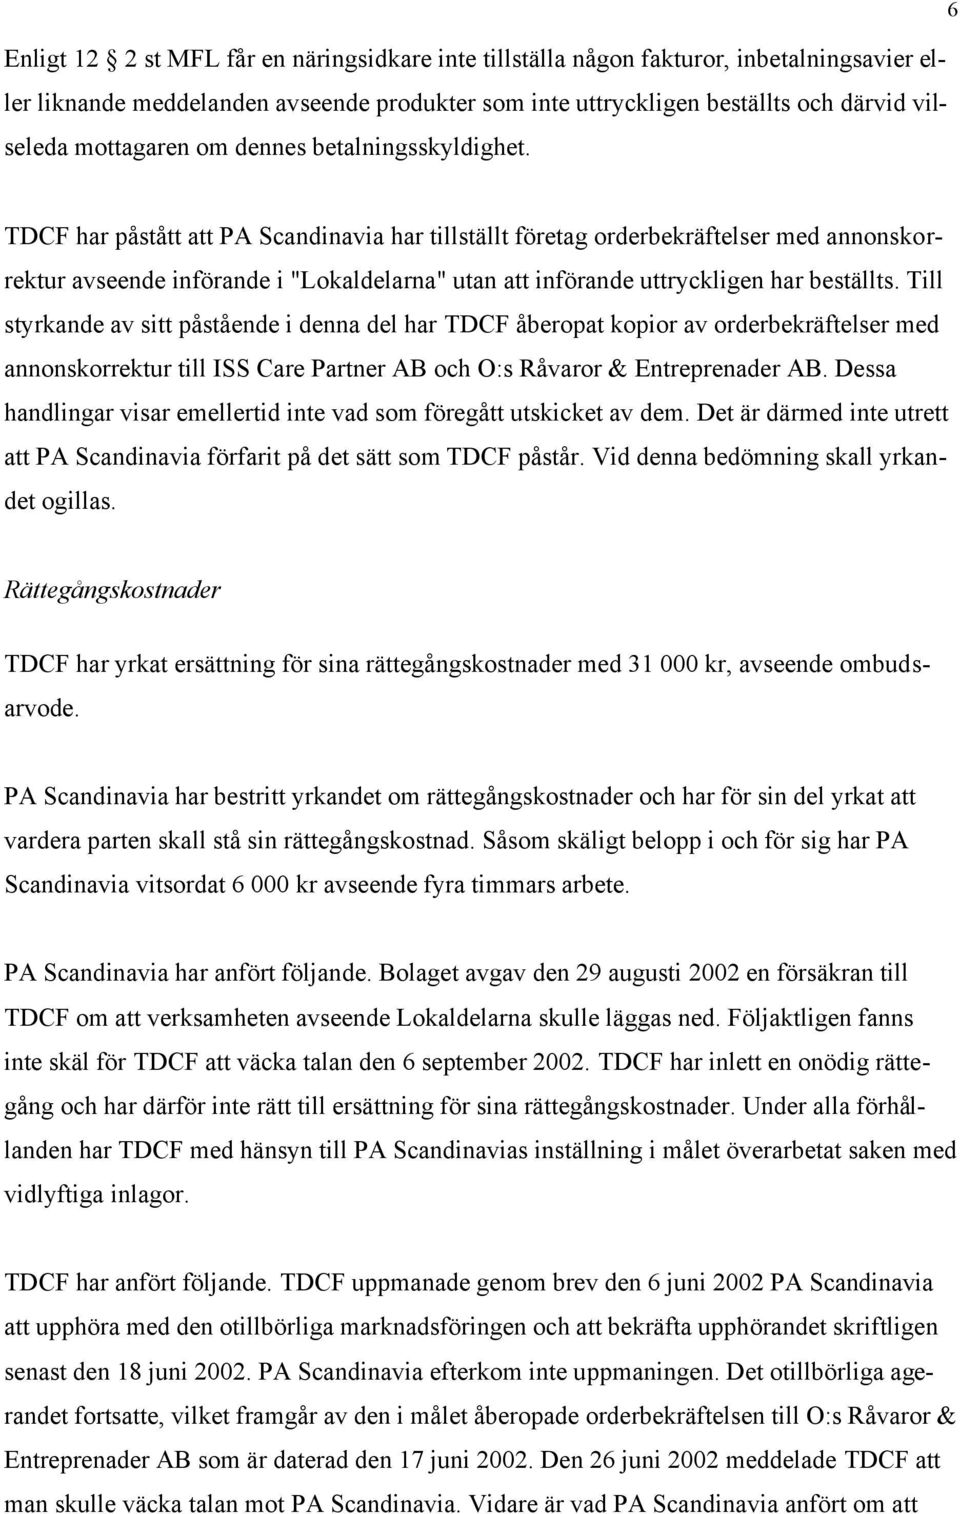 TDCF har påstått att PA Scandinavia har tillställt företag orderbekräftelser med annonskorrektur avseende införande i "Lokaldelarna" utan att införande uttryckligen har beställts.